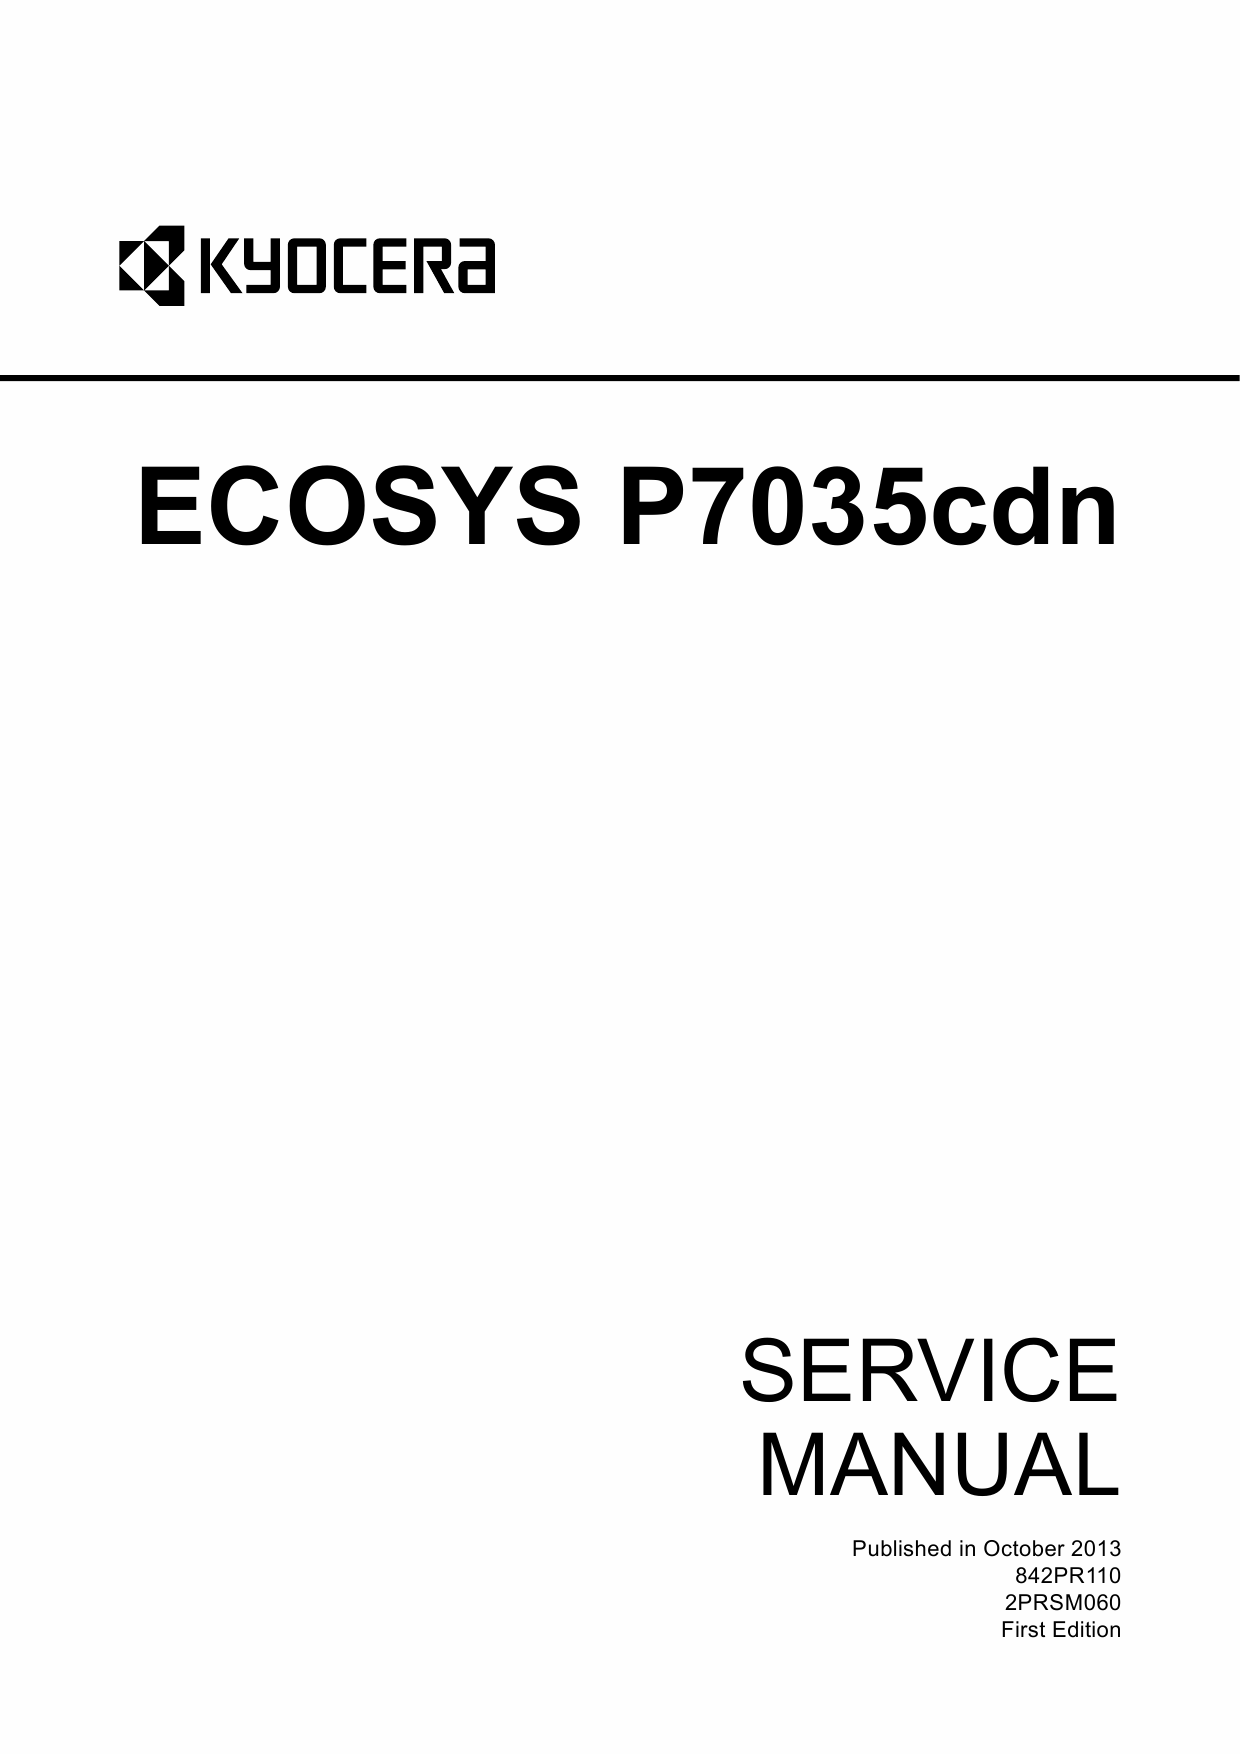 KYOCERA ColorLaserPrinter ECOSYS-P7035cdn Service Manual-1